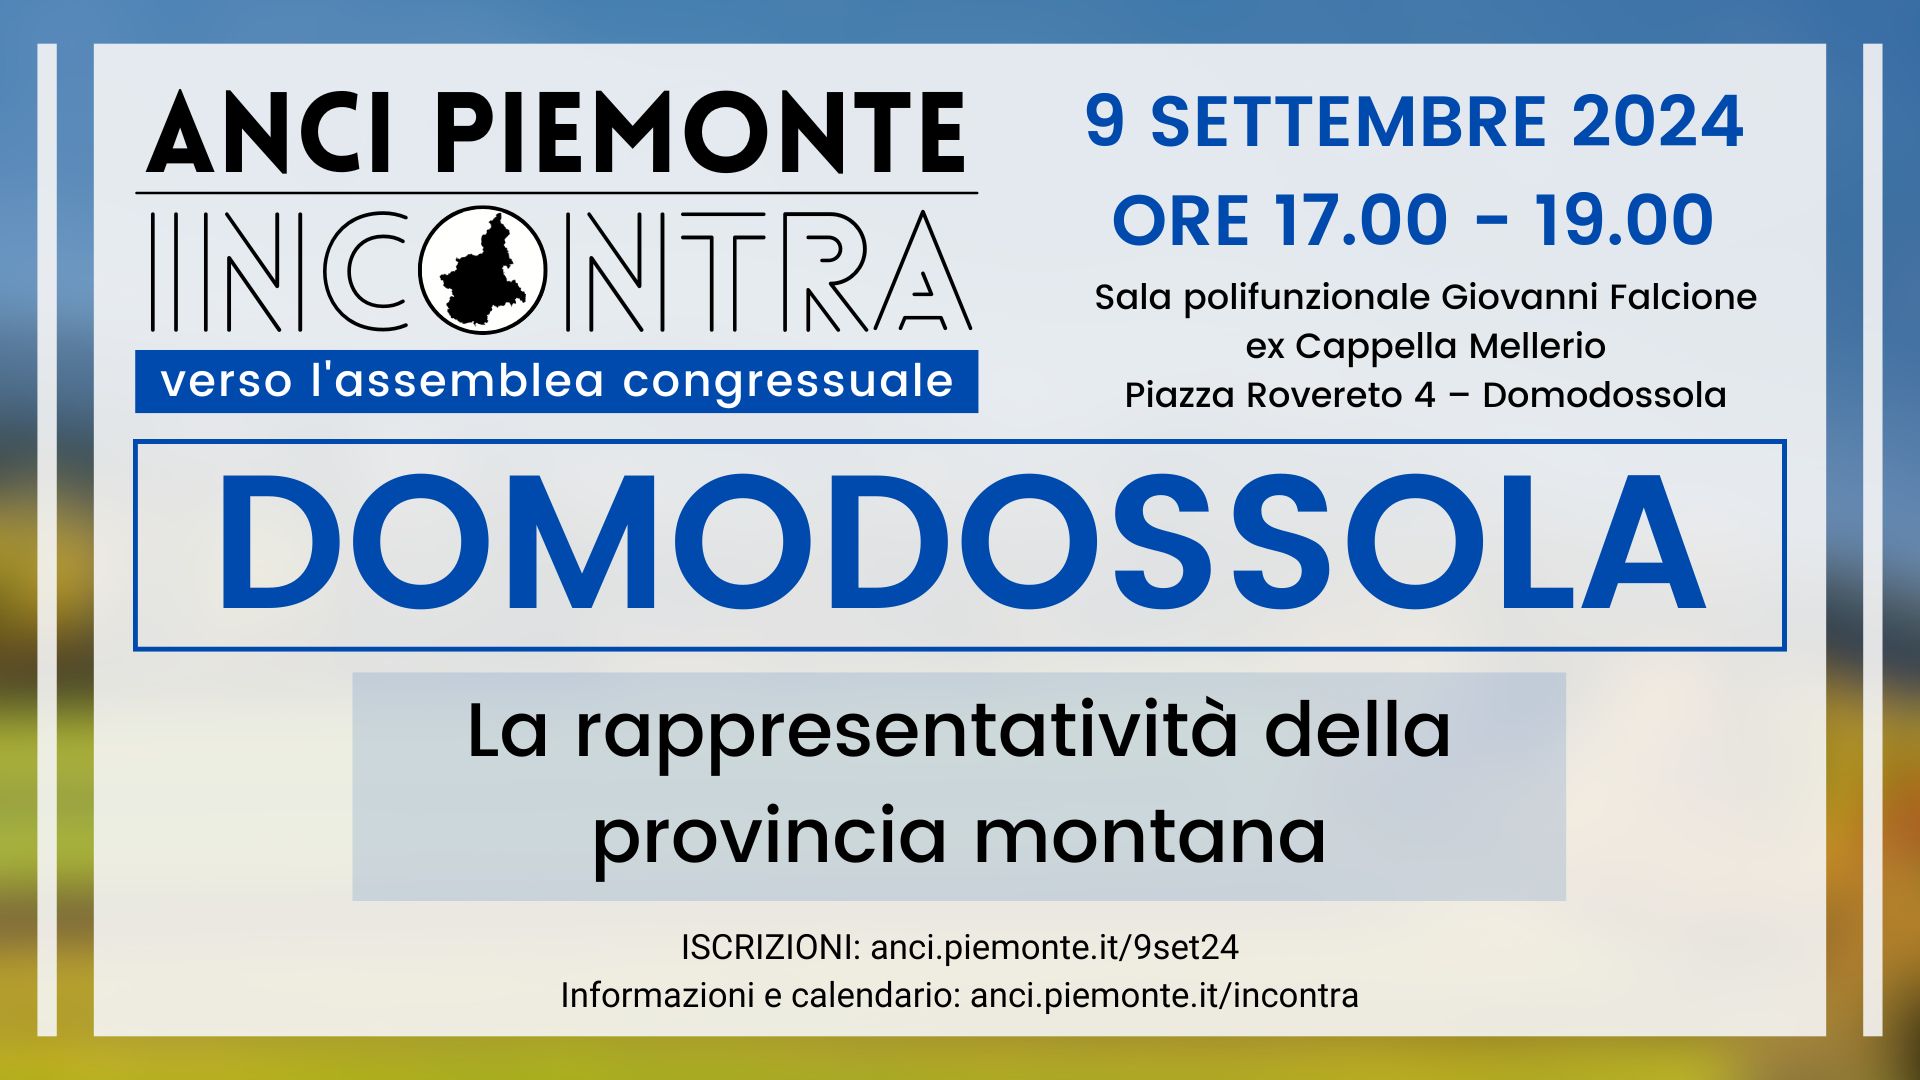 ANCI Piemonte Incontra - Domodossola - 9 settembre 2024